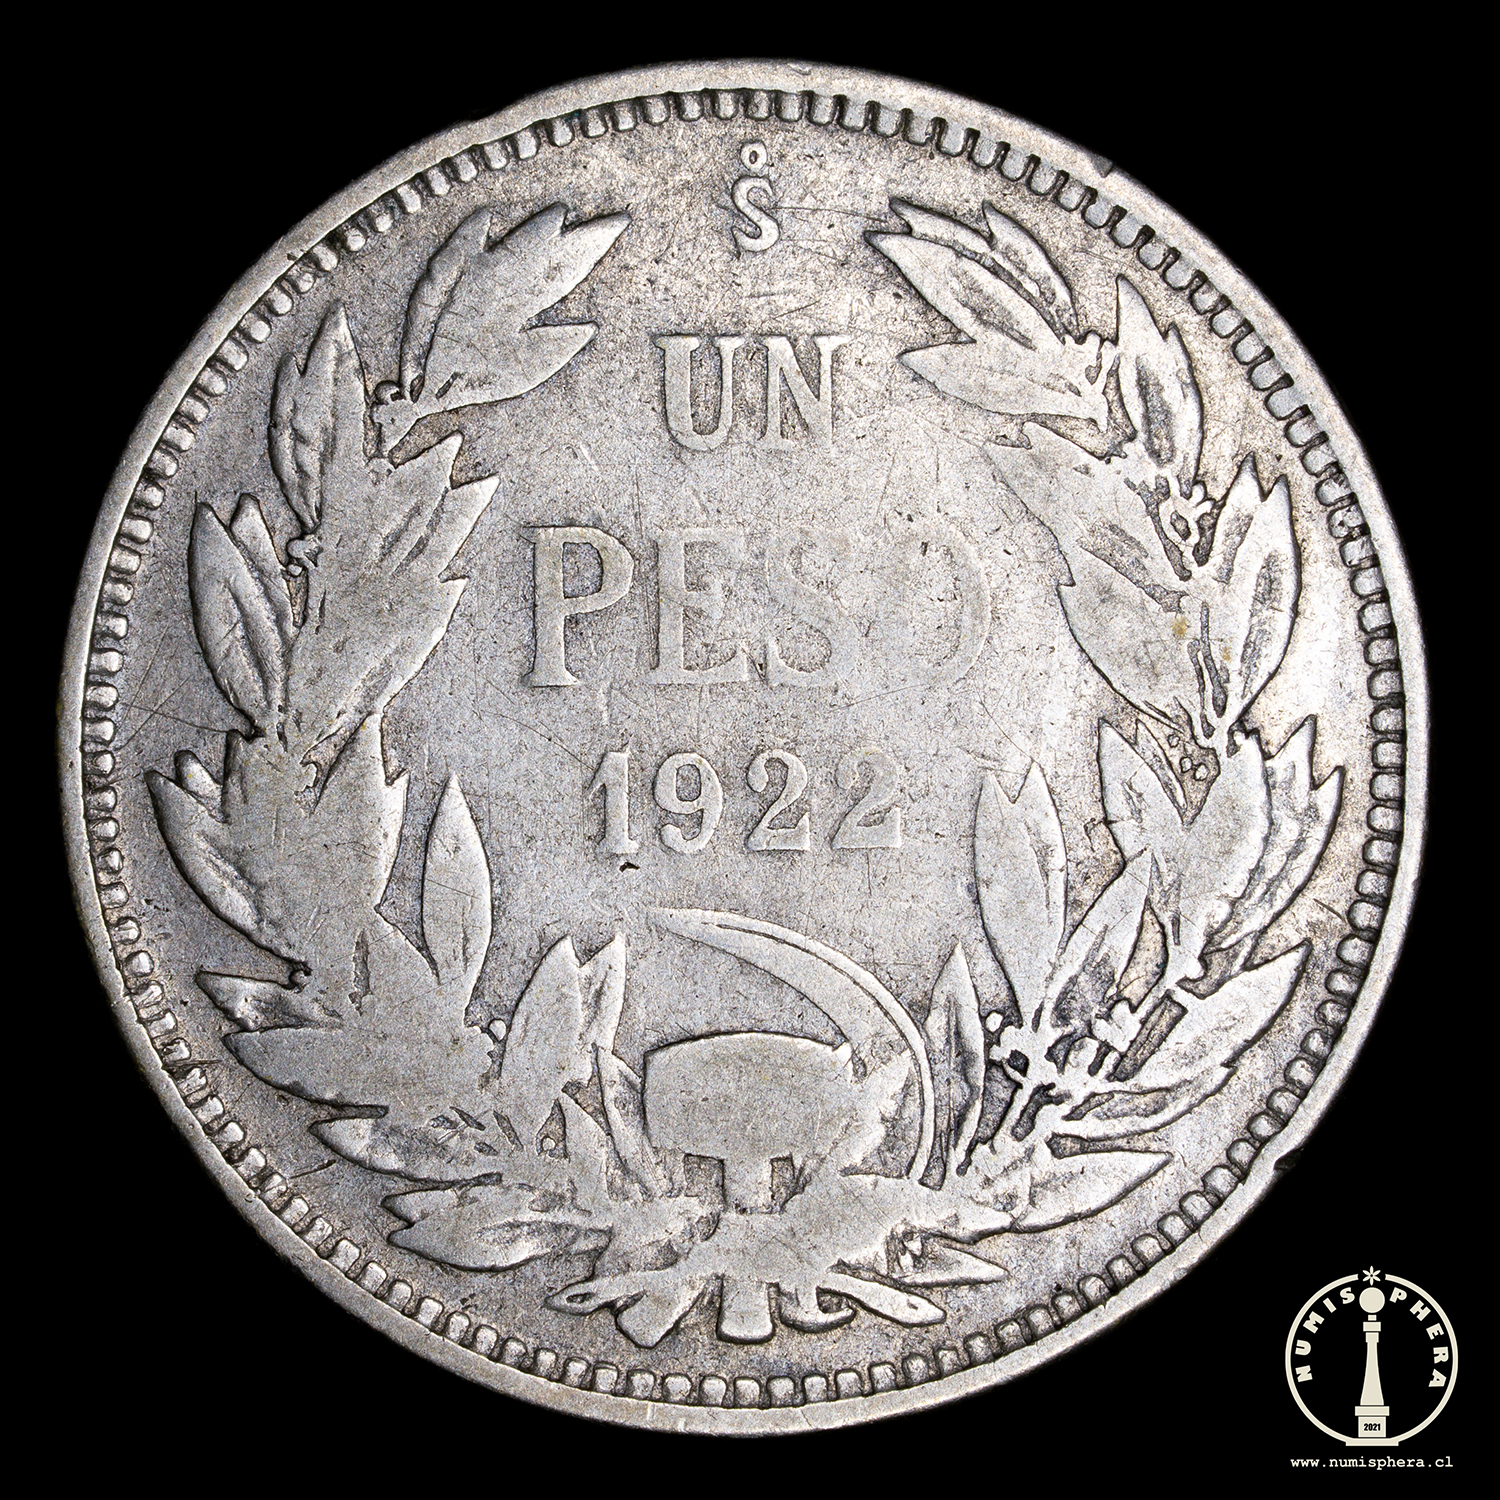 1 Peso 1922 – Chile – EL MERCADITO NUMISMÁTICO CHILE